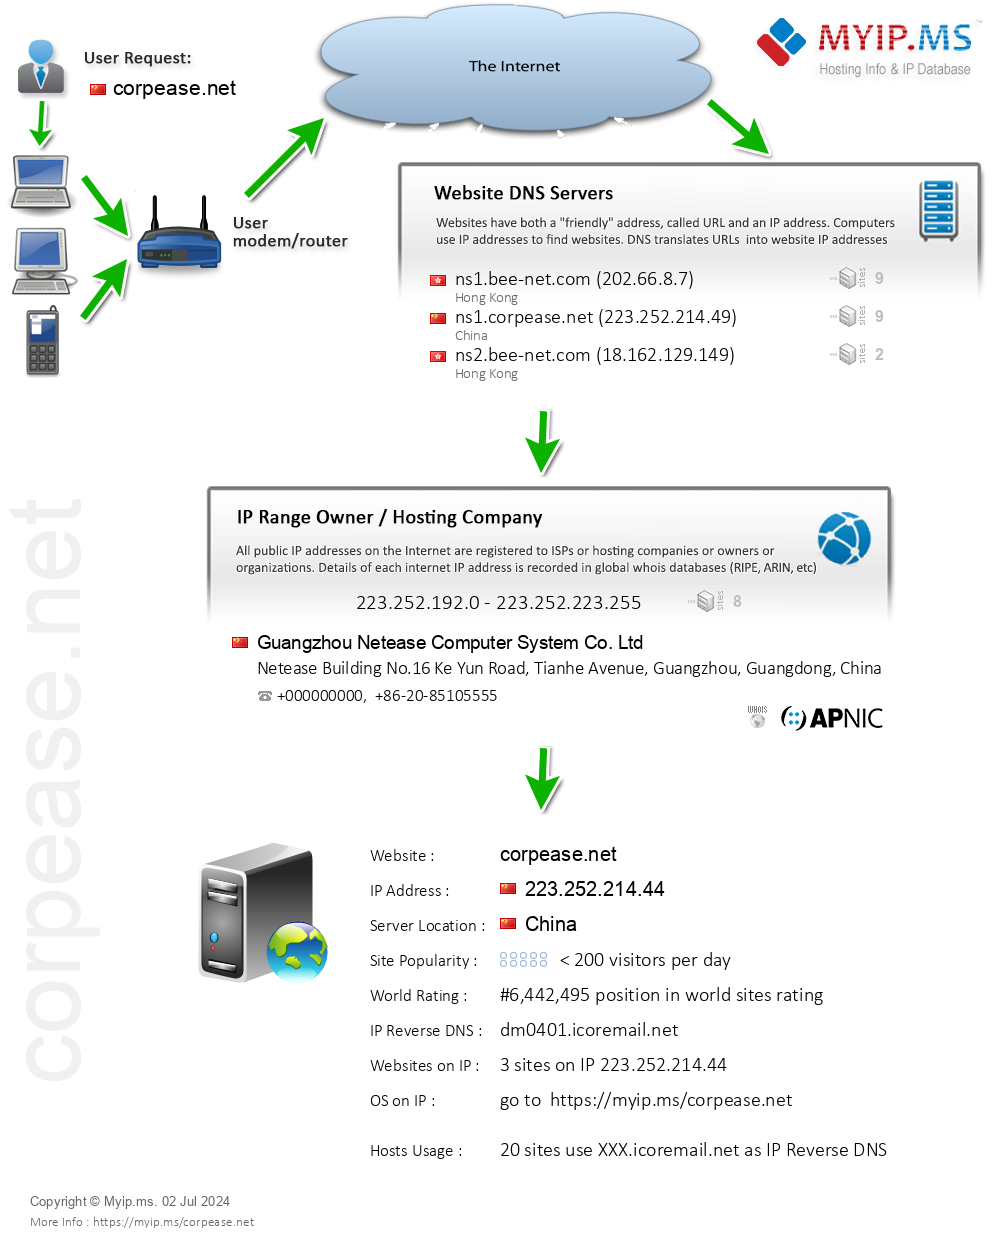 Corpease.net - Website Hosting Visual IP Diagram